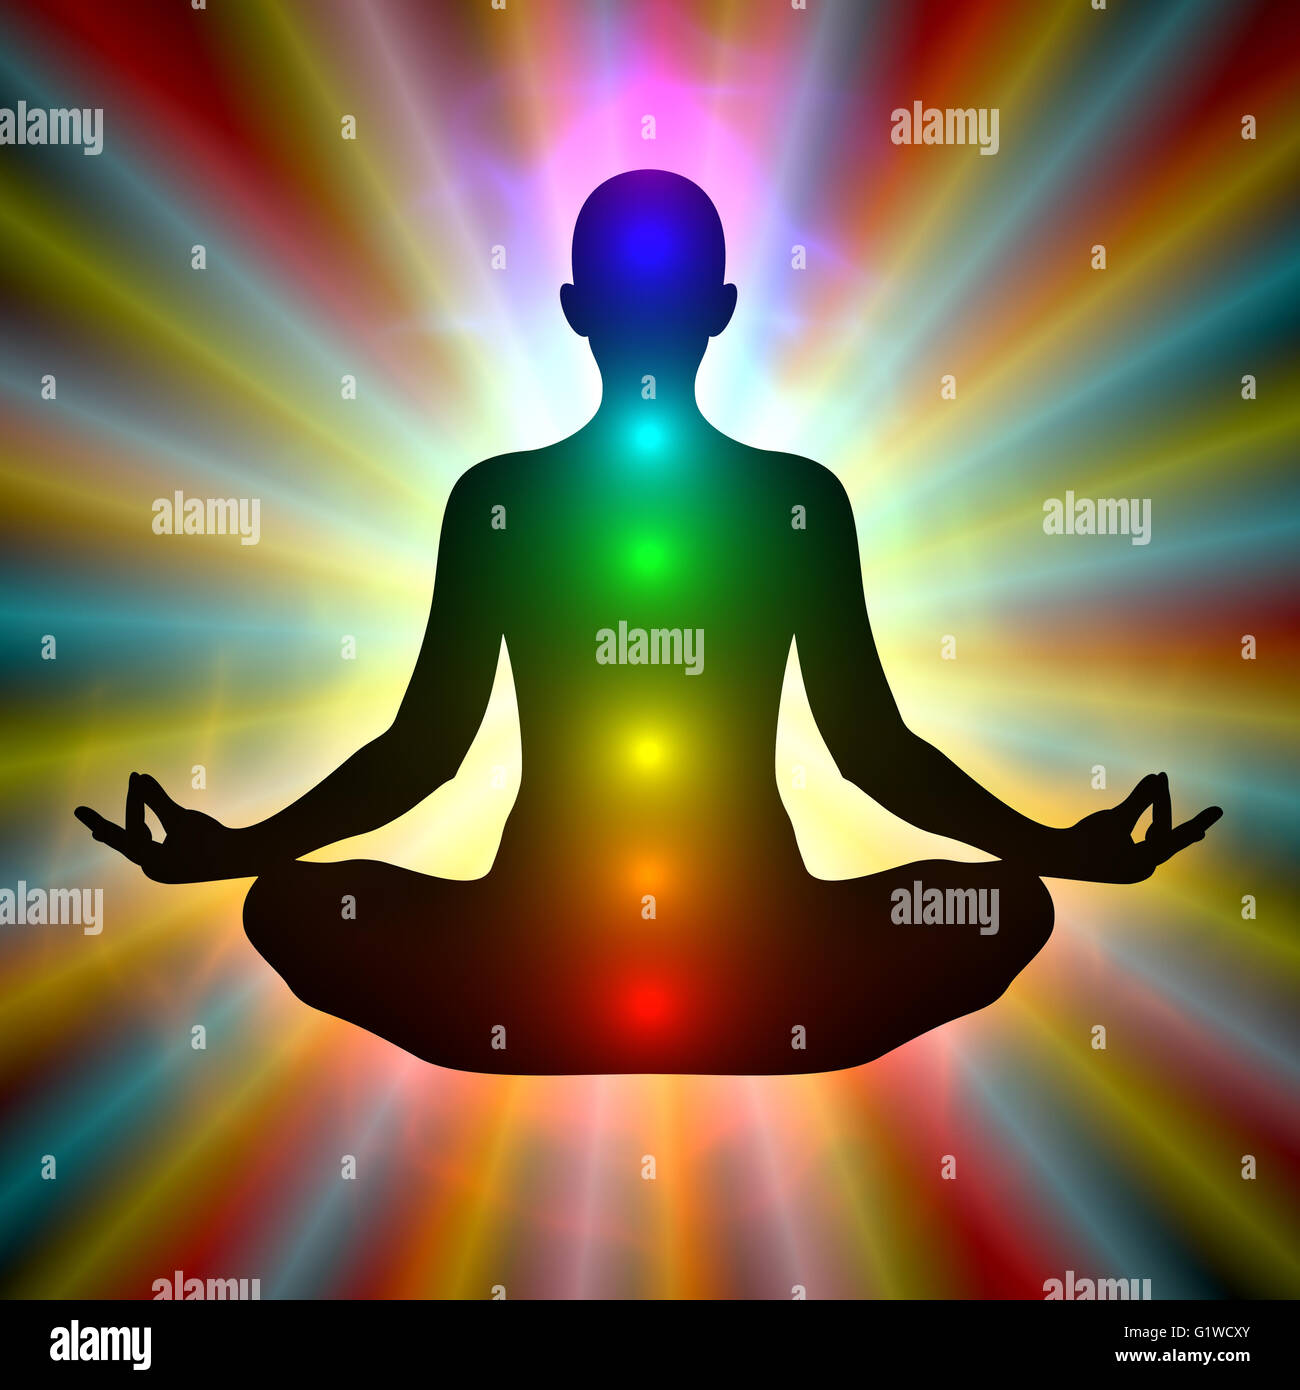 Illustrazione della donna nella meditazione su sfondo colorato Foto stock -  Alamy